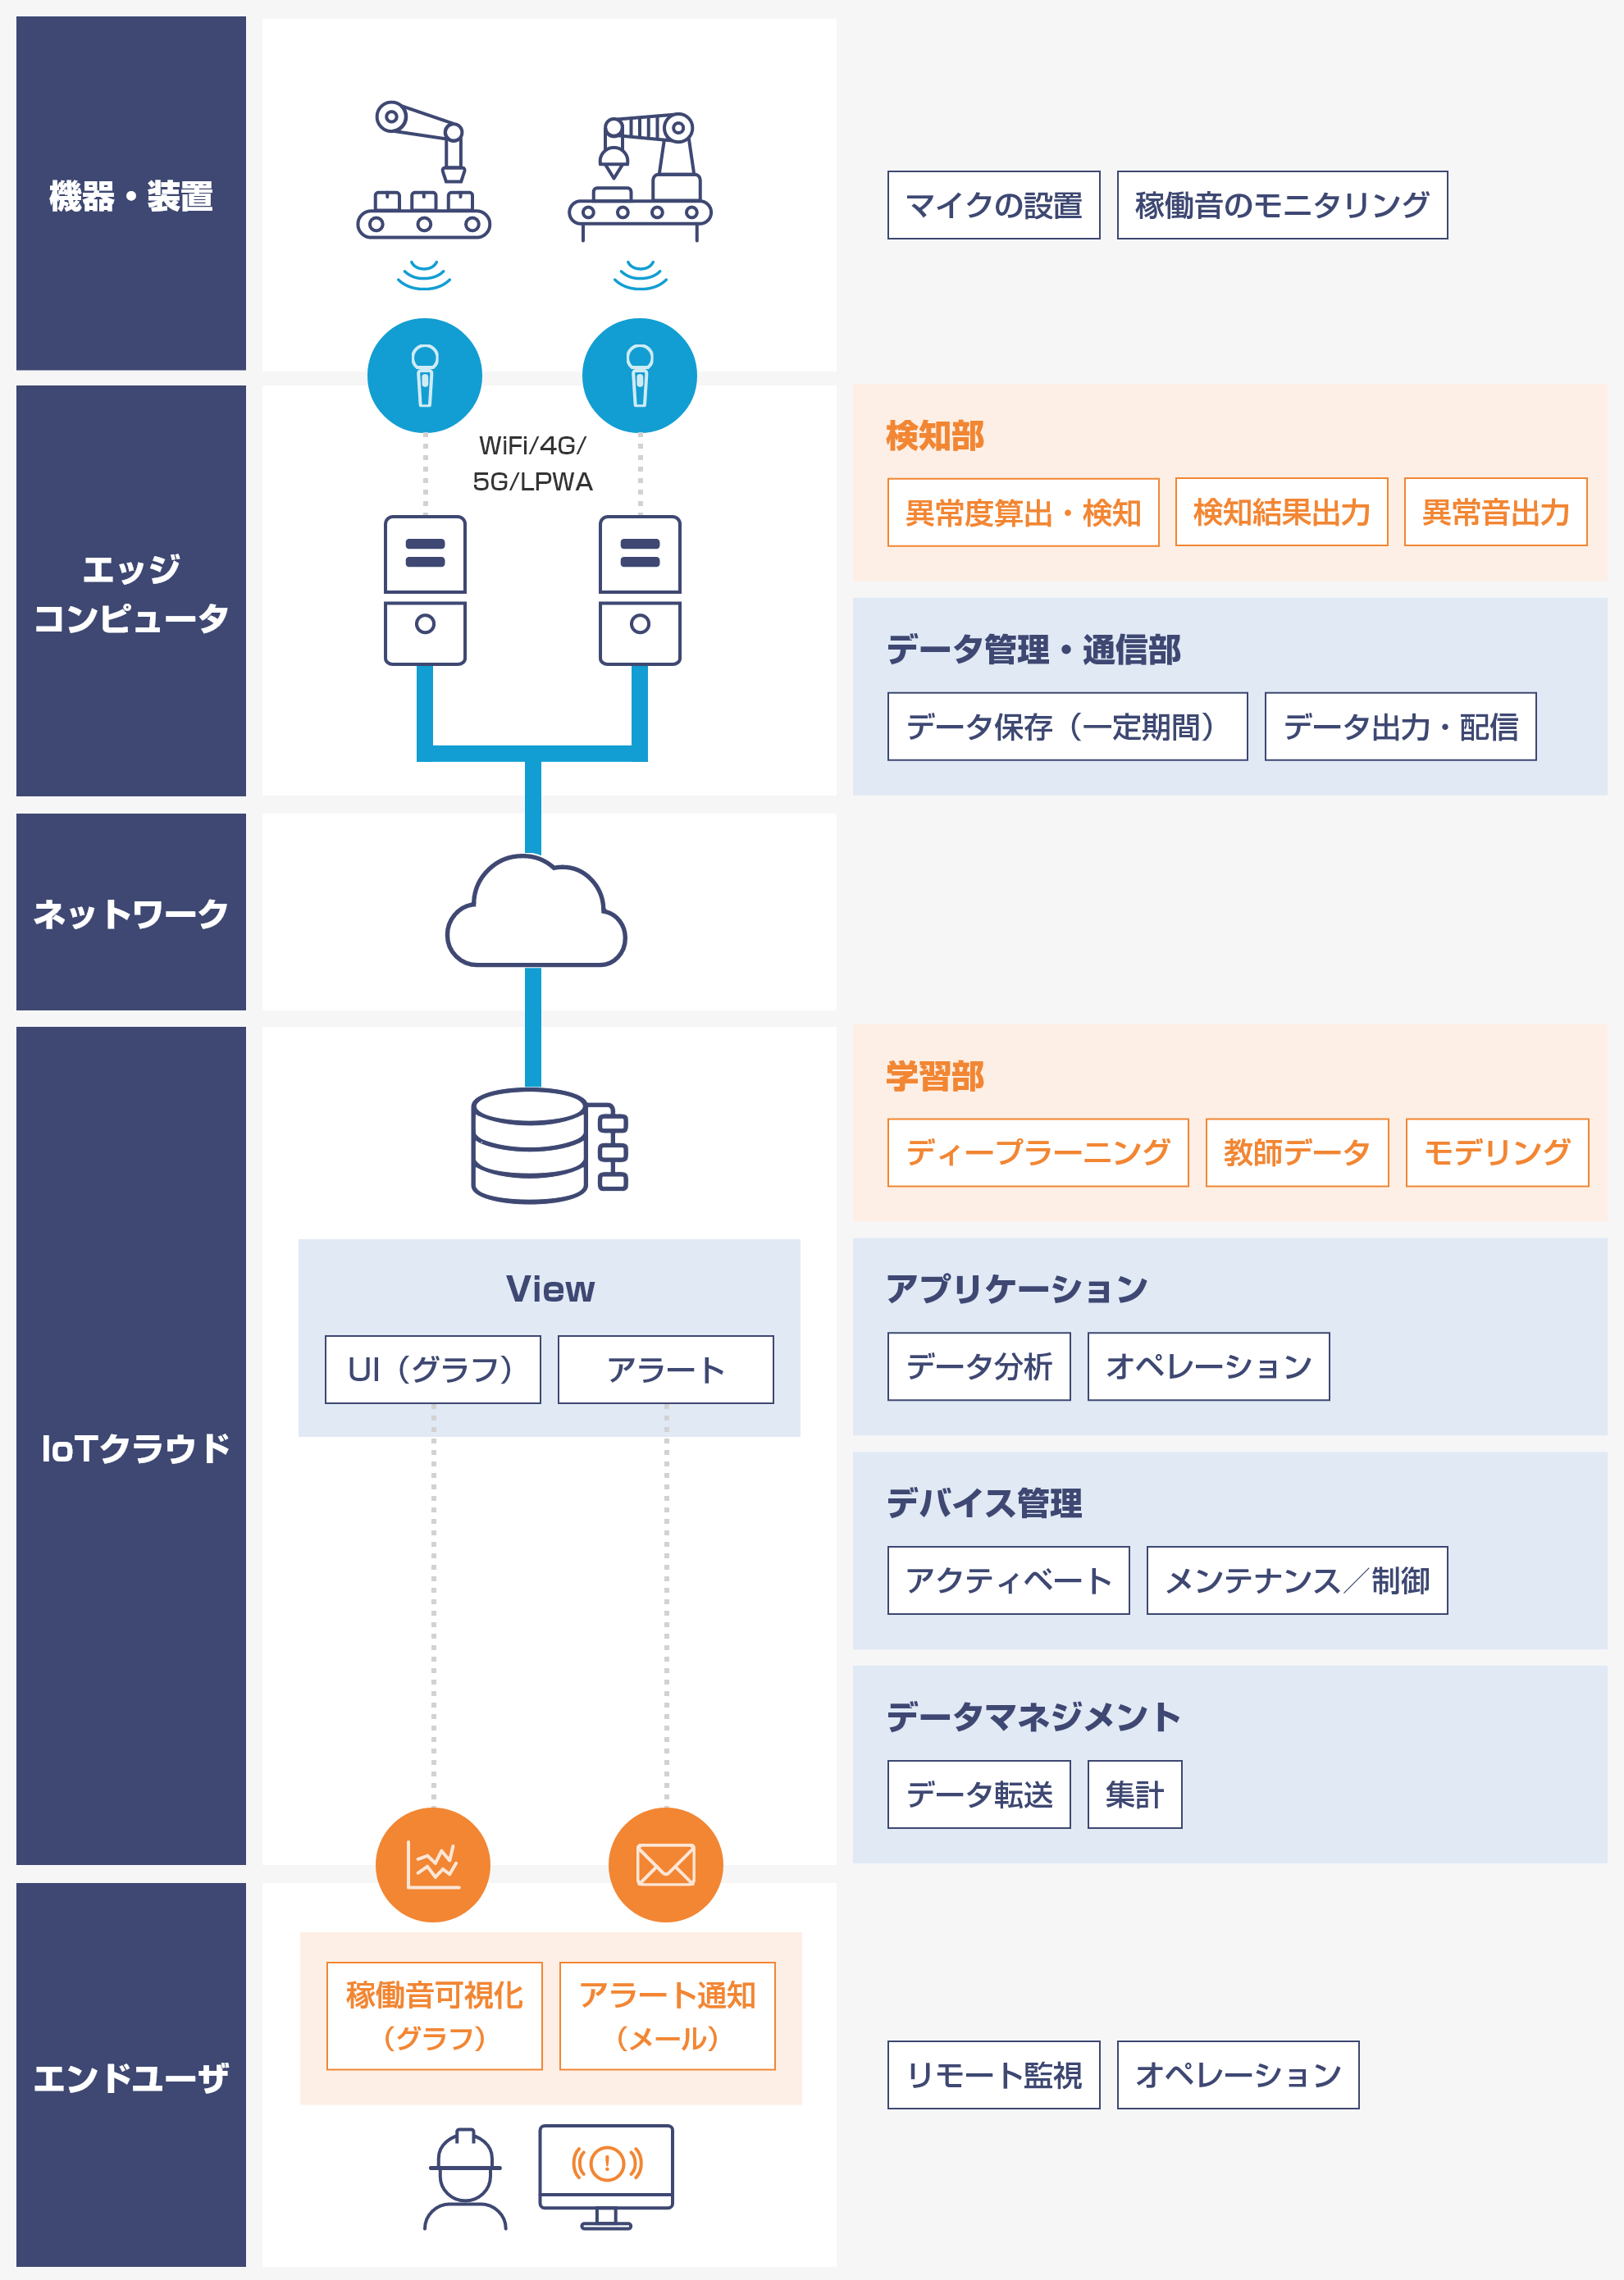 システム構成のイメージ図